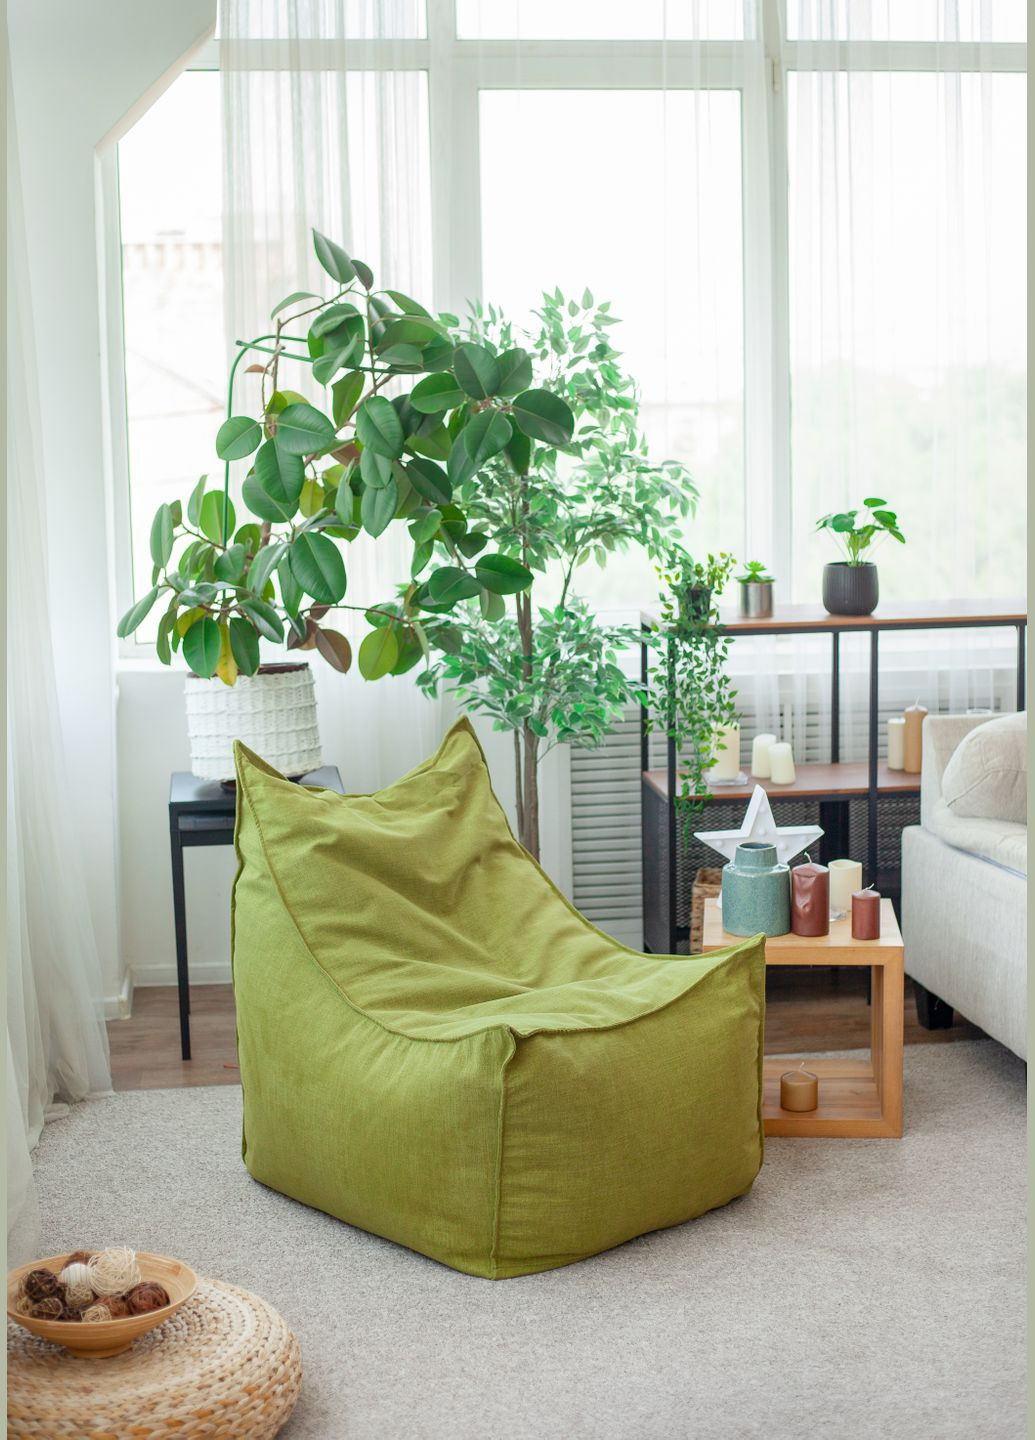 Крісло безкаркасне мішок груша "Кіт", 80х70 см, меблева мікророгожка, зелений Pufok (276070414)